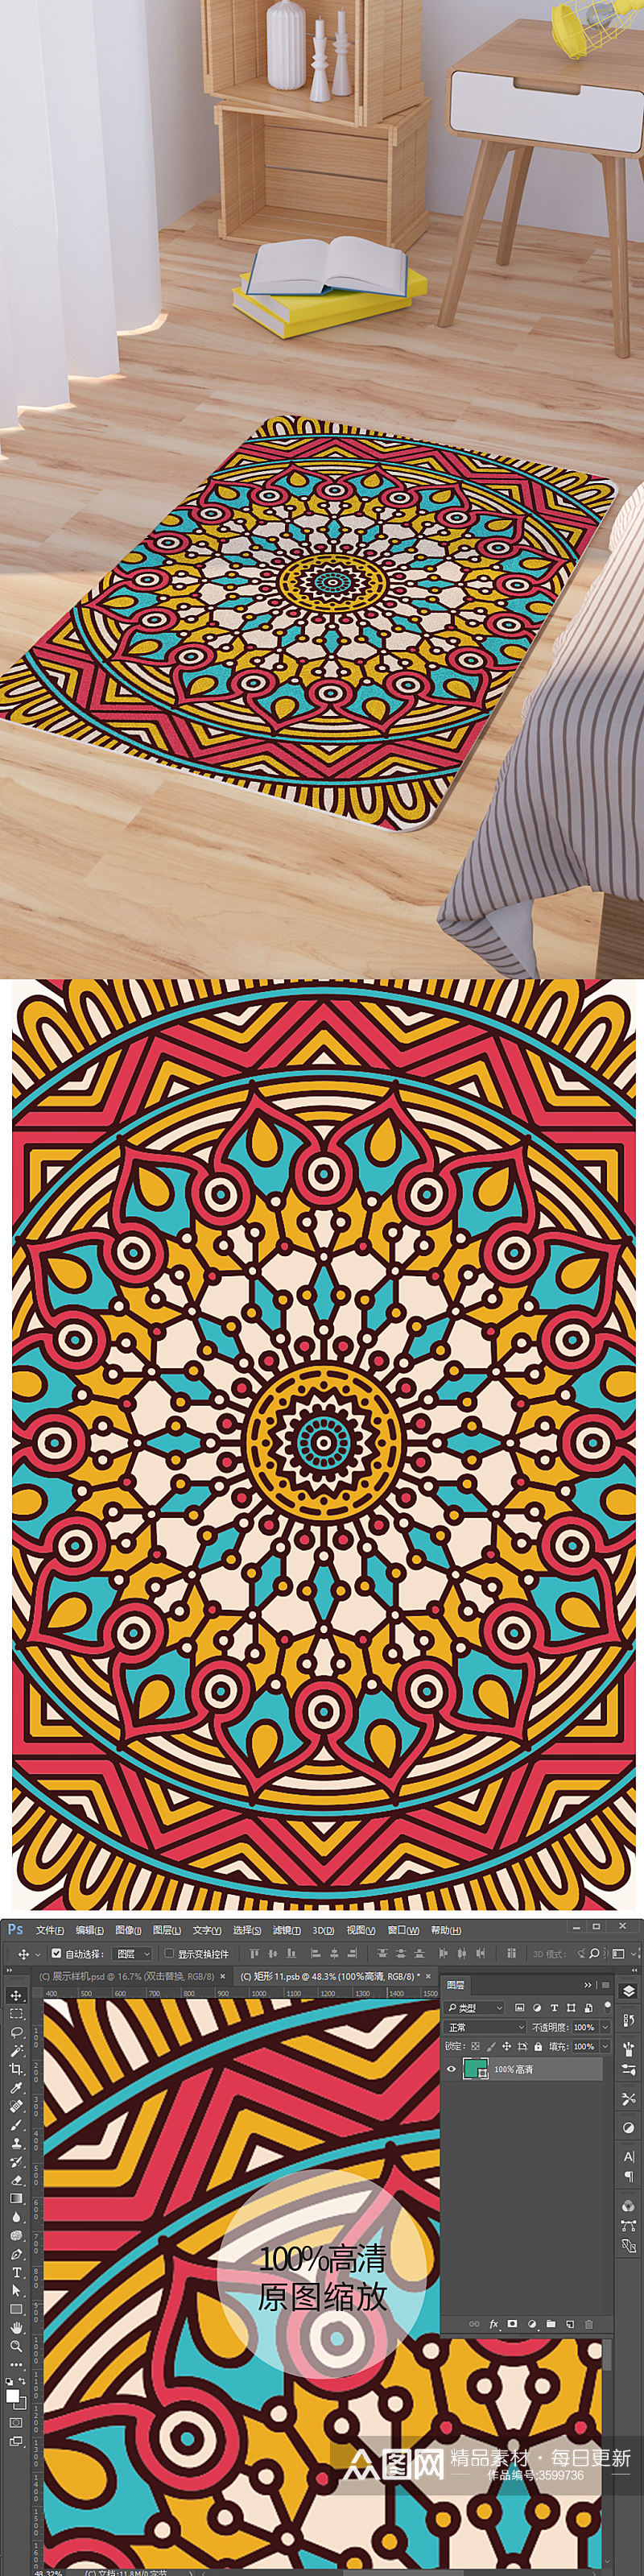 曼陀罗纹理矢量手绘花纹脚垫地毯图案素材